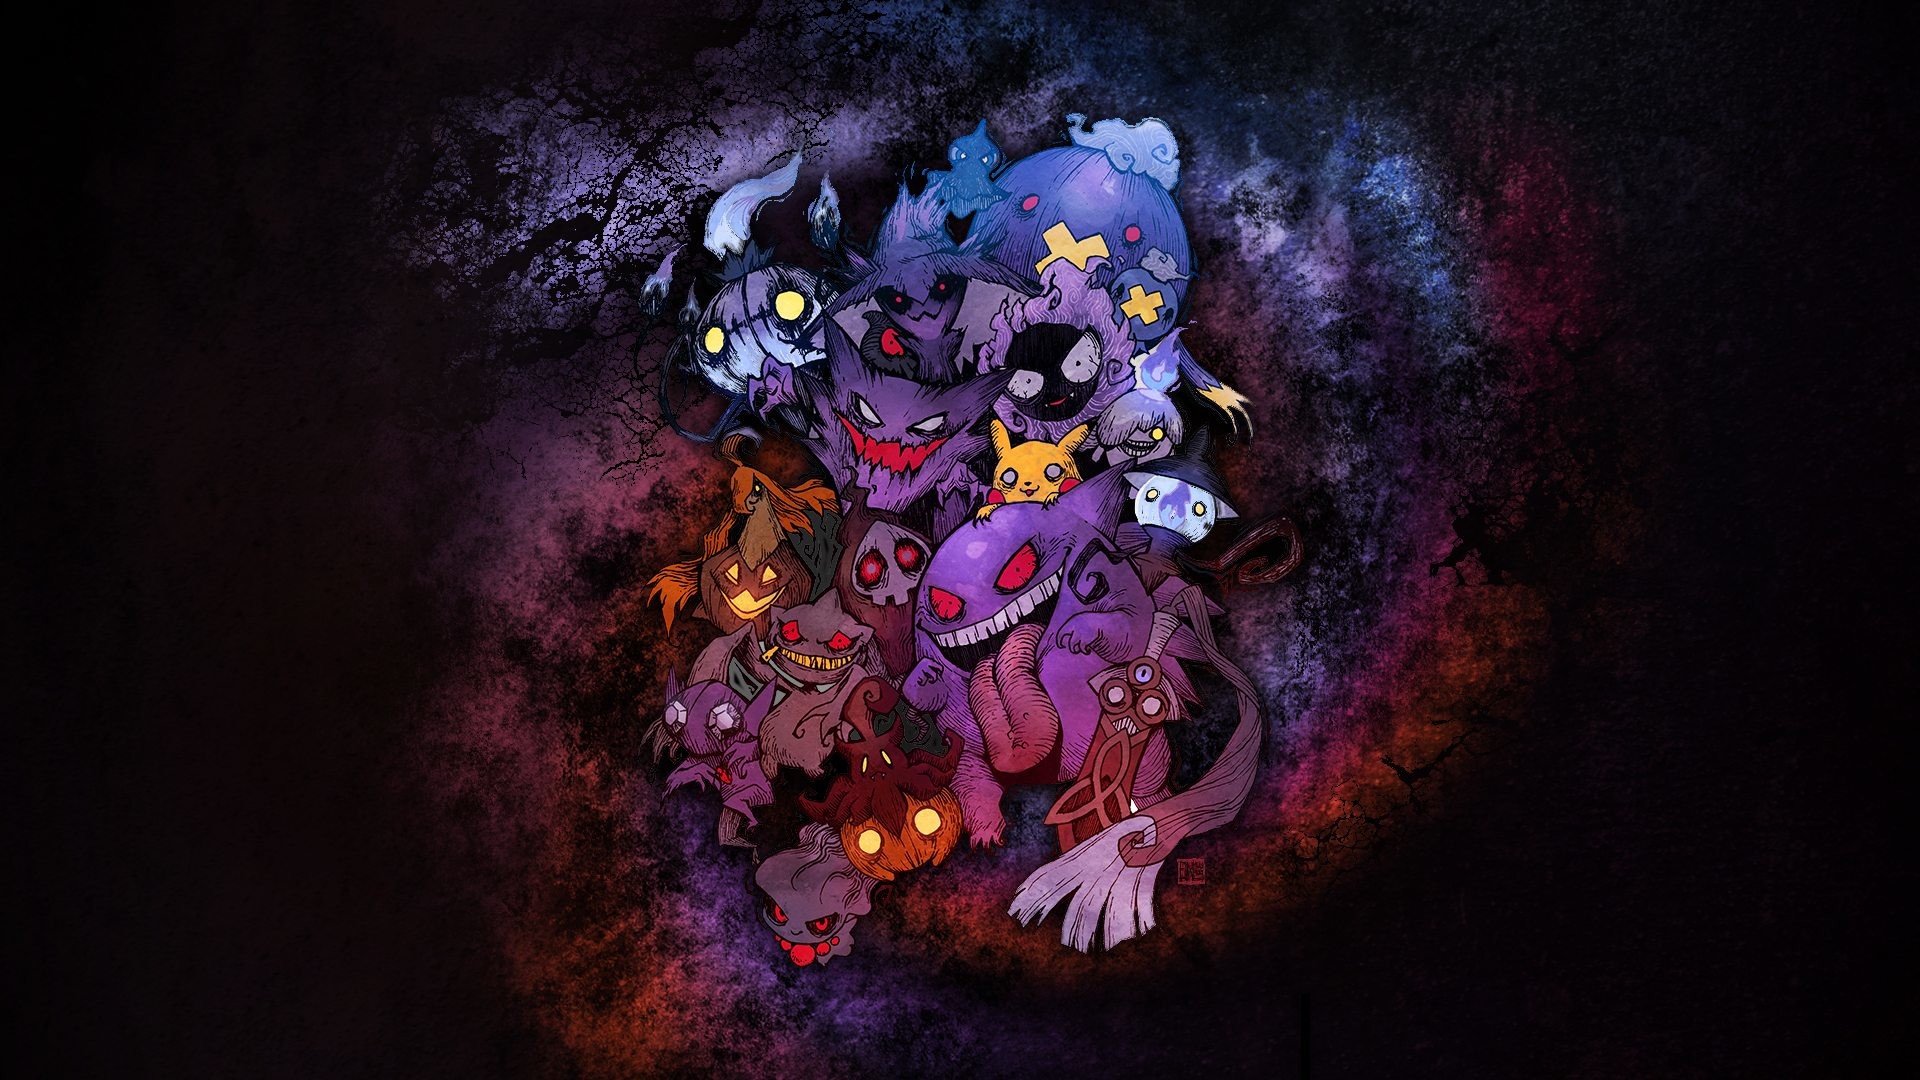 fond d'écran pokemon hd,violet,violet,illustration,ténèbres,personnage fictif